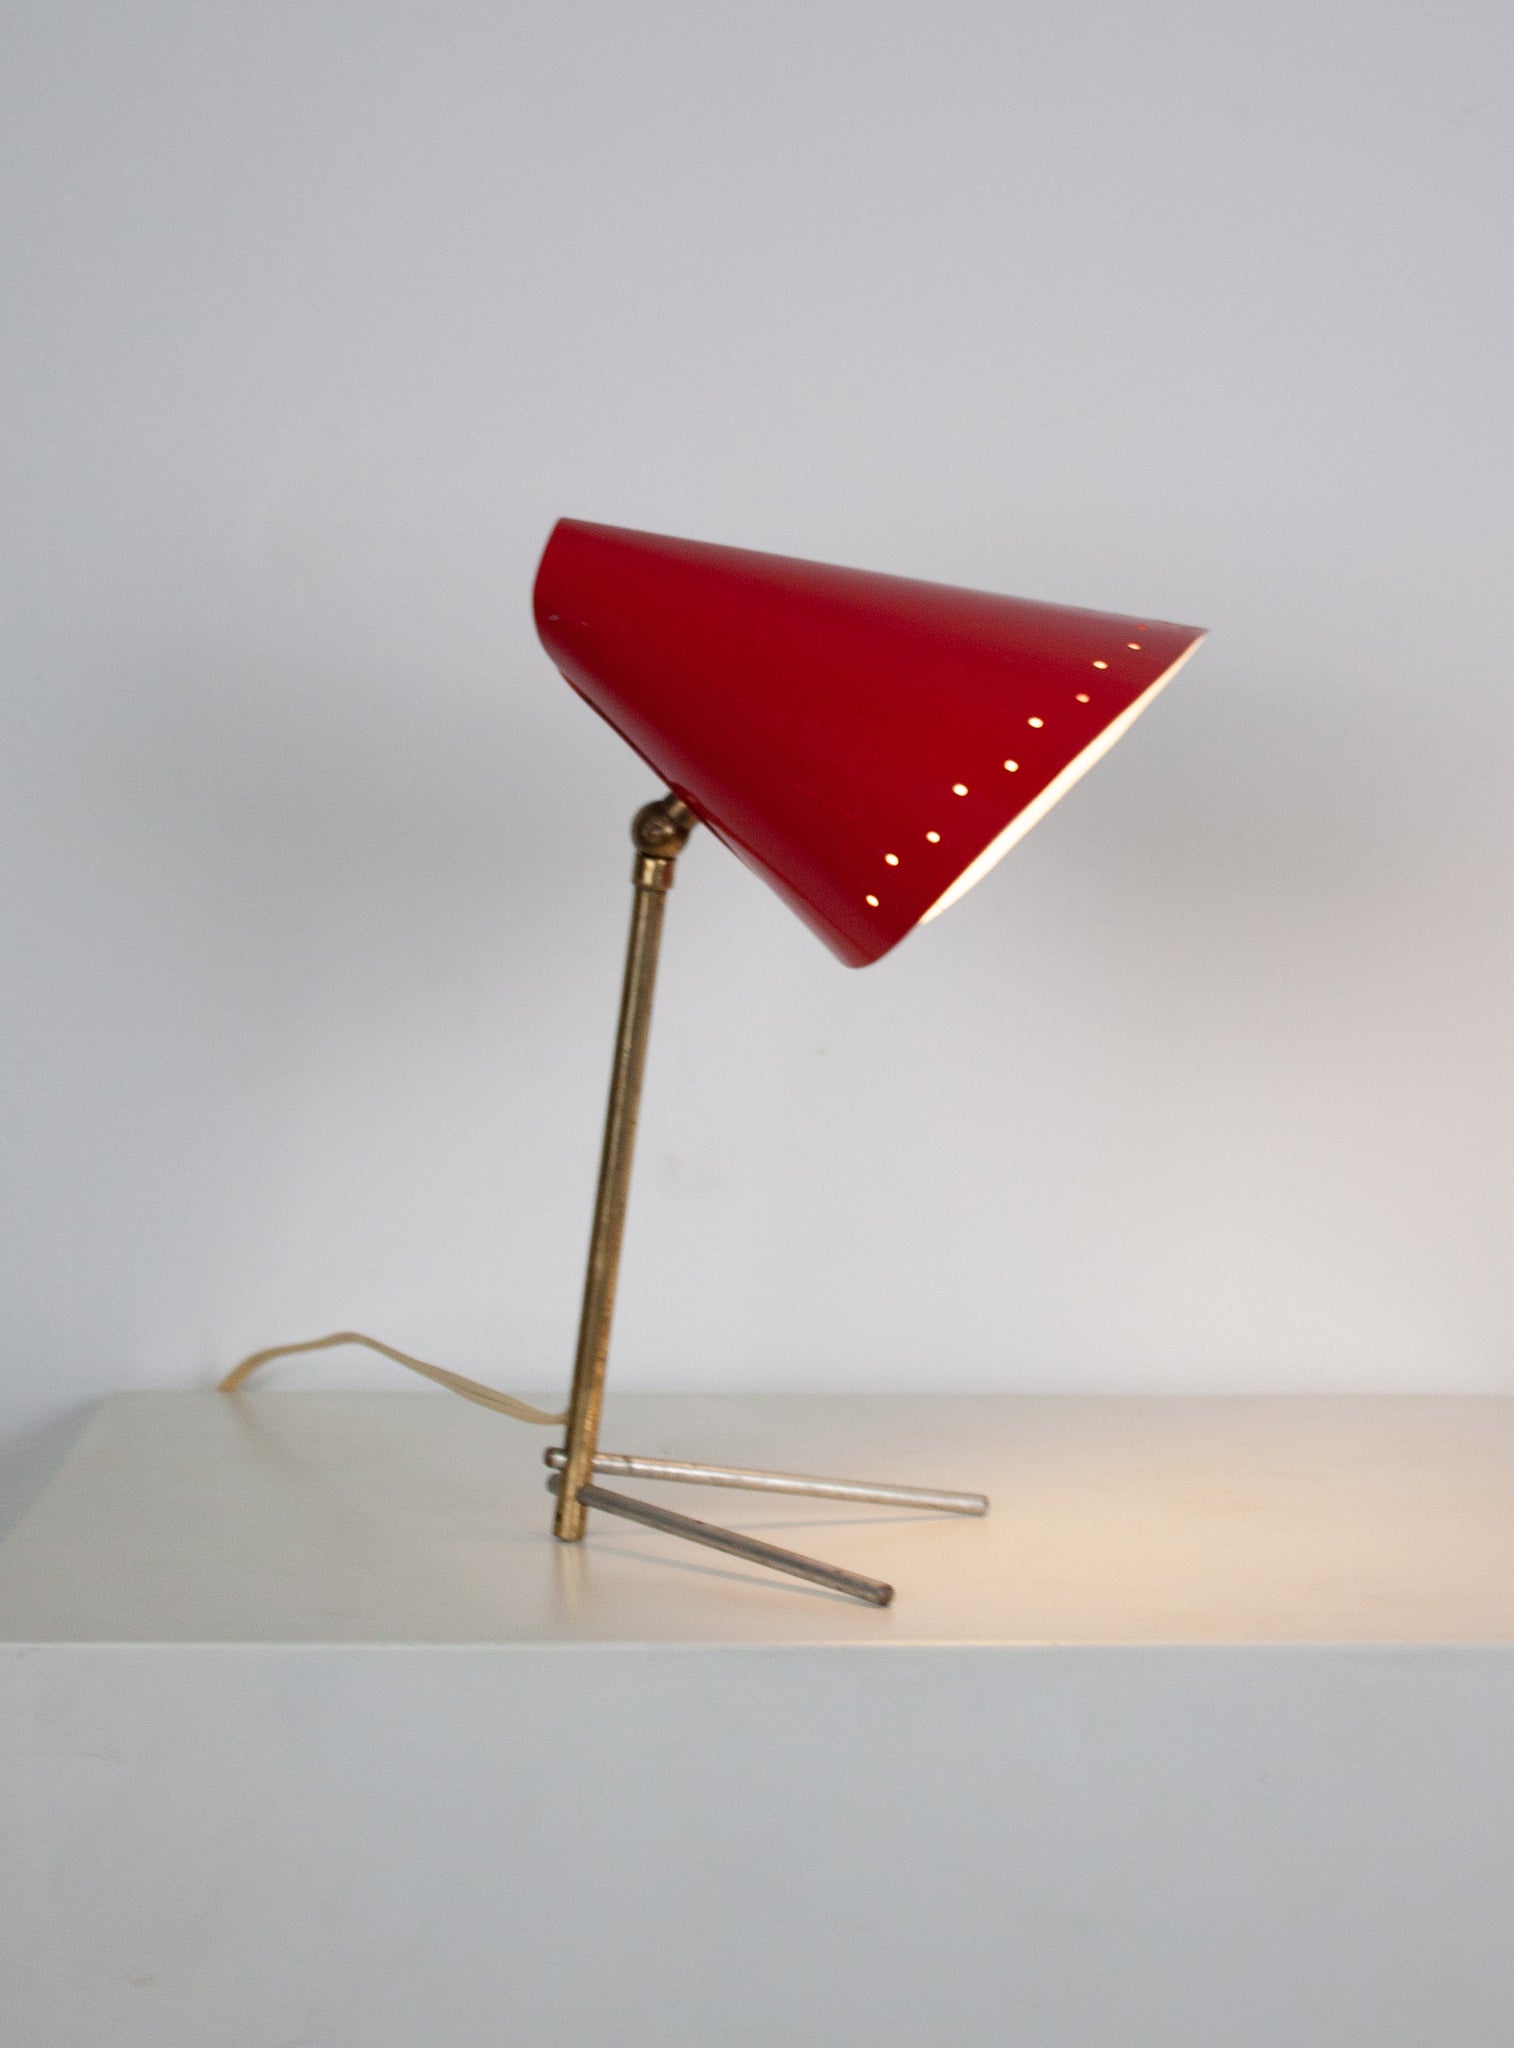 Metal Desk Lamp in style of Stilnovo (Red)